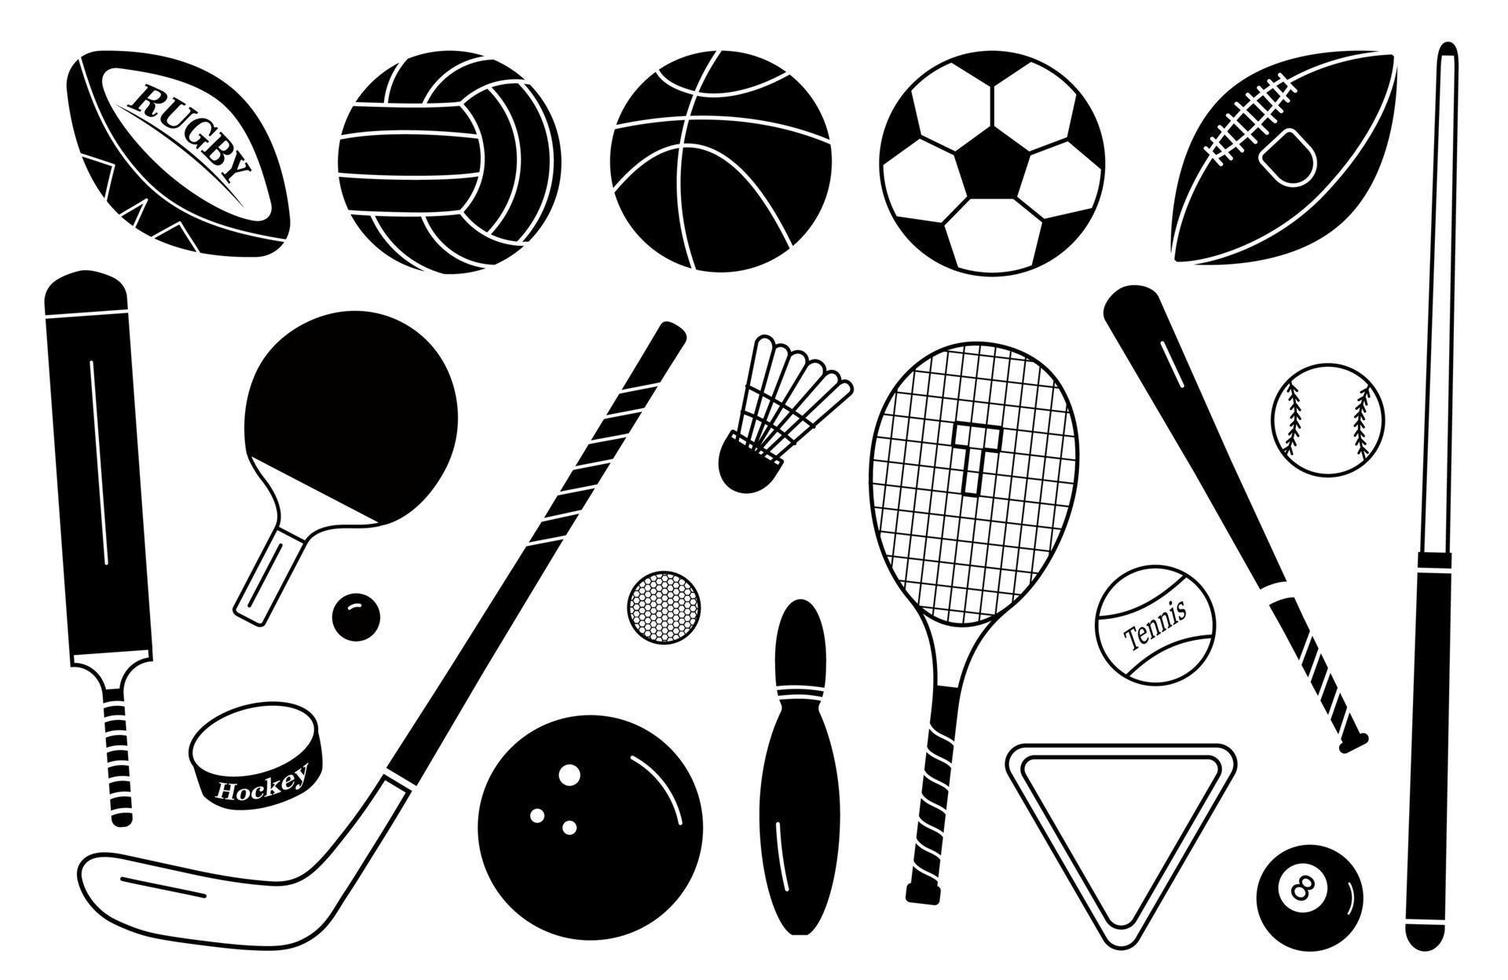 bolas de silhueta esportiva e conjunto de equipamentos. coleção de vetores em um estilo simples